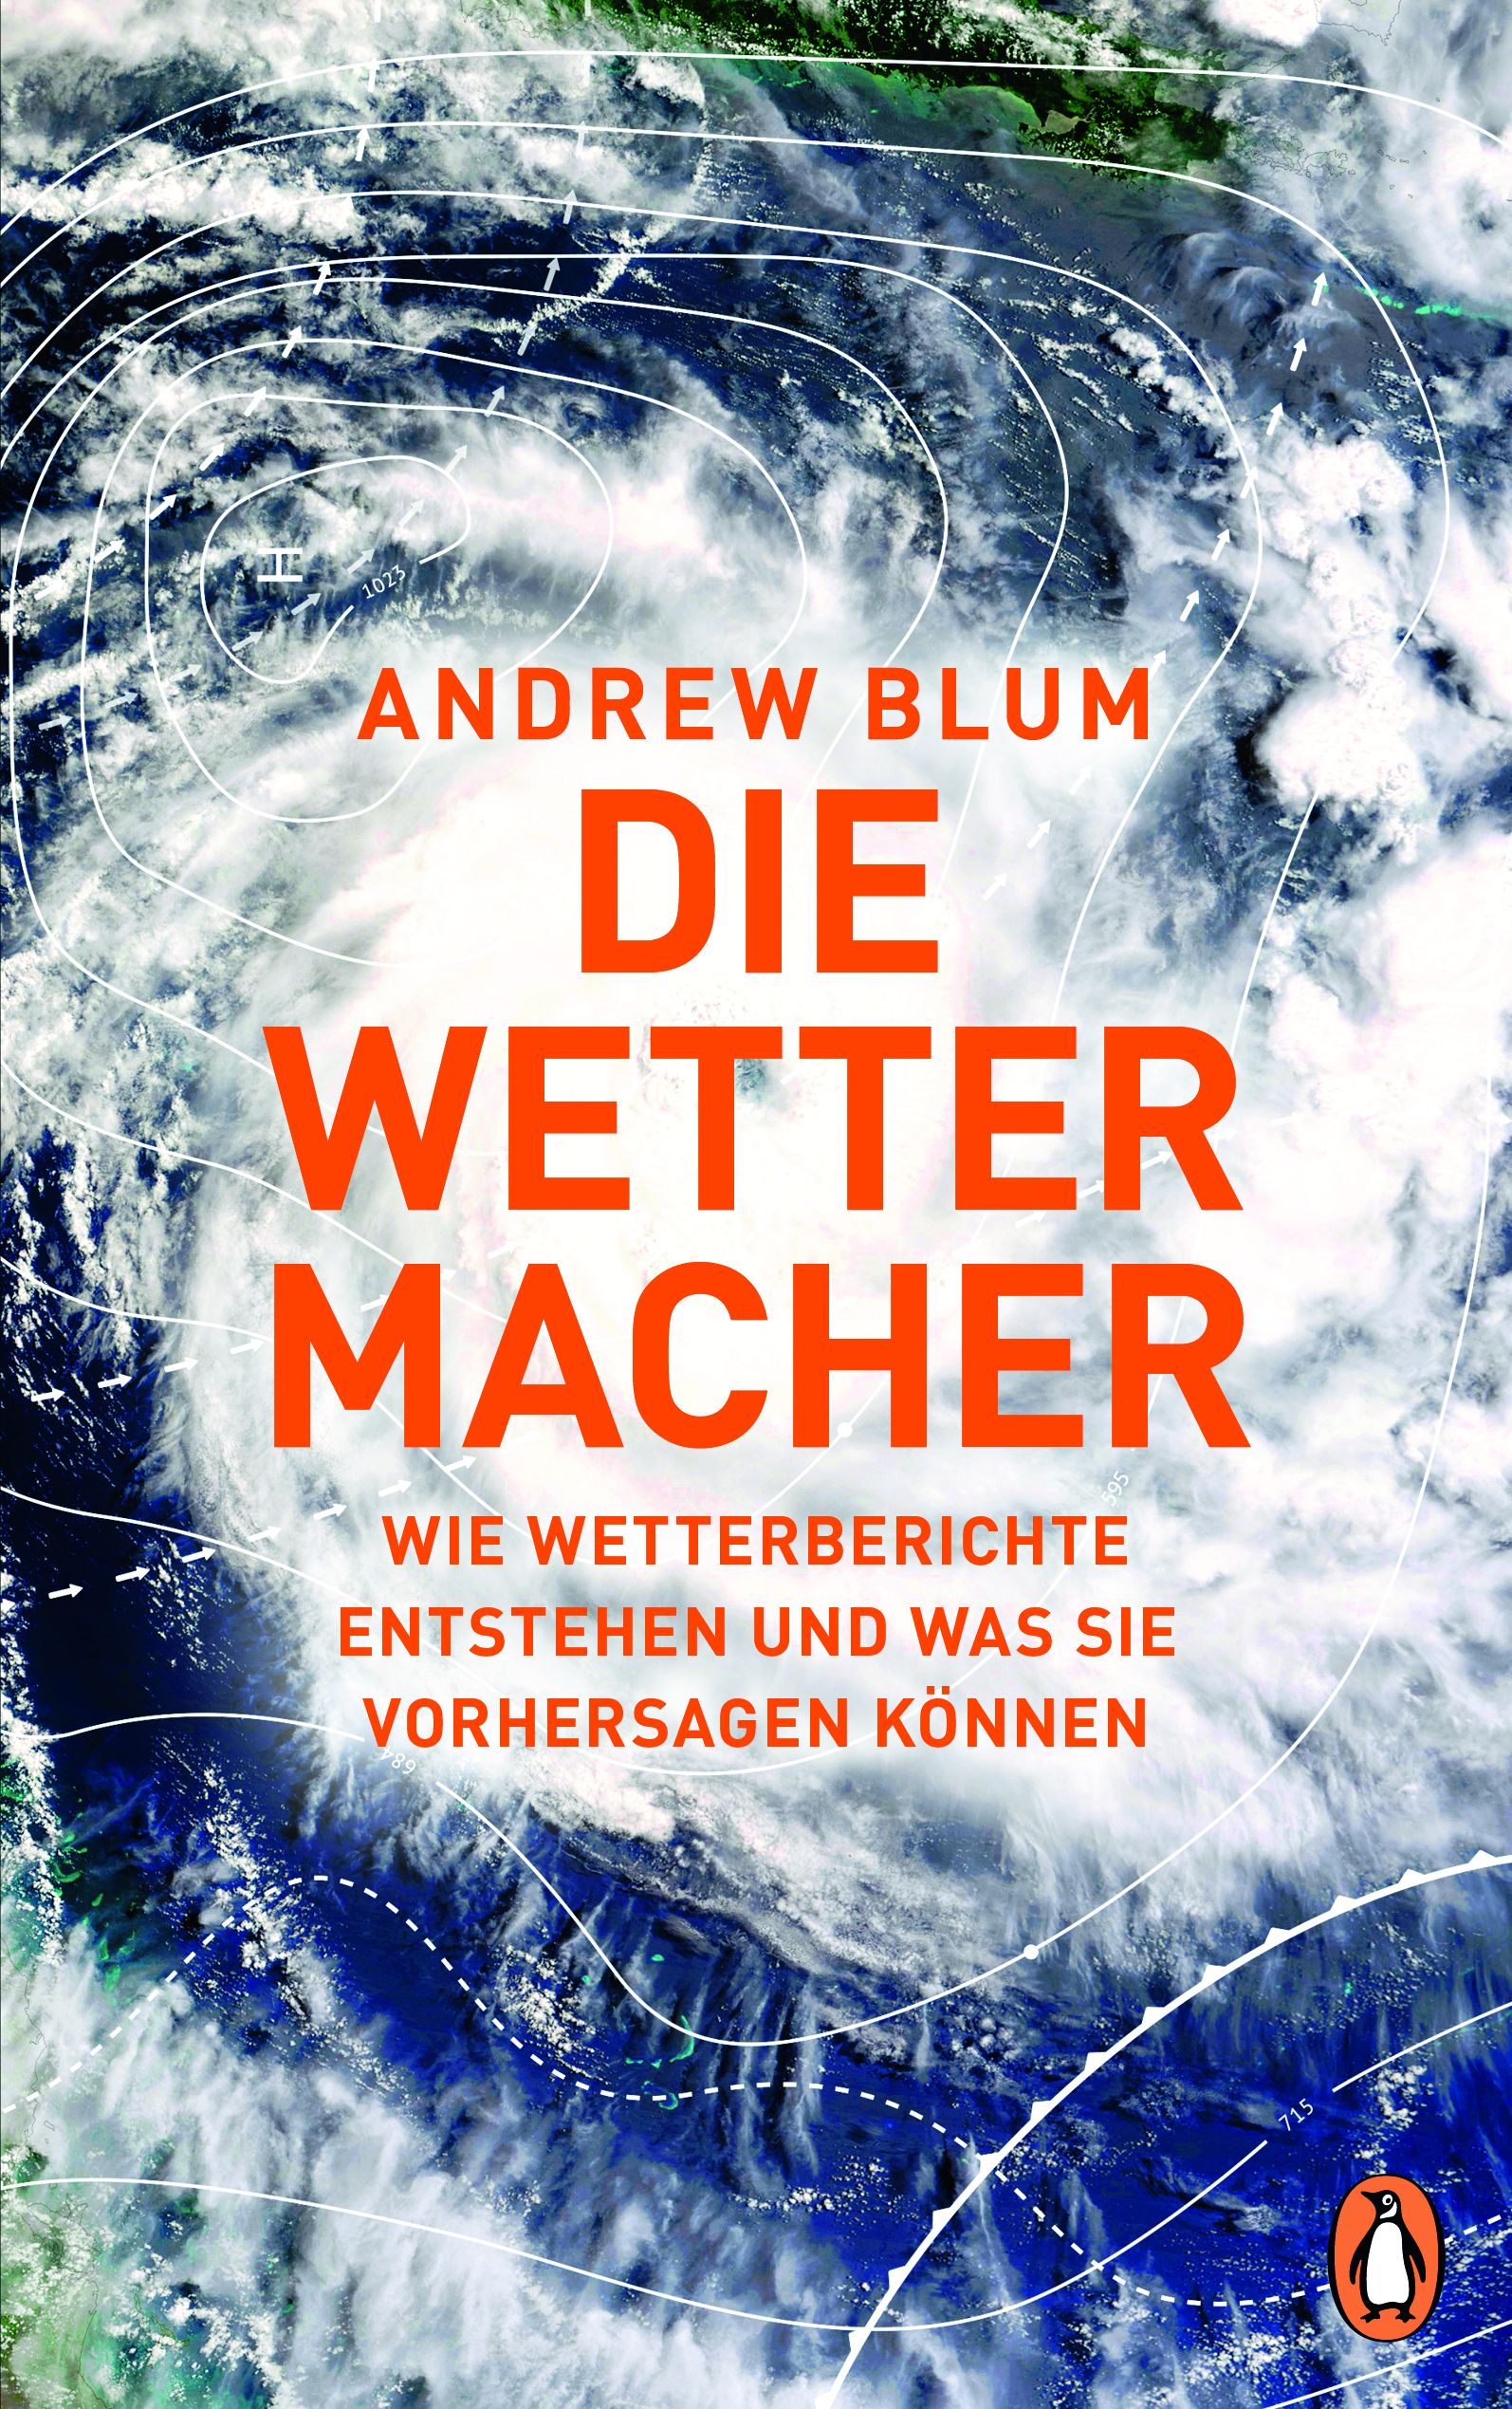 Andrew Blum: Die Wettermacher